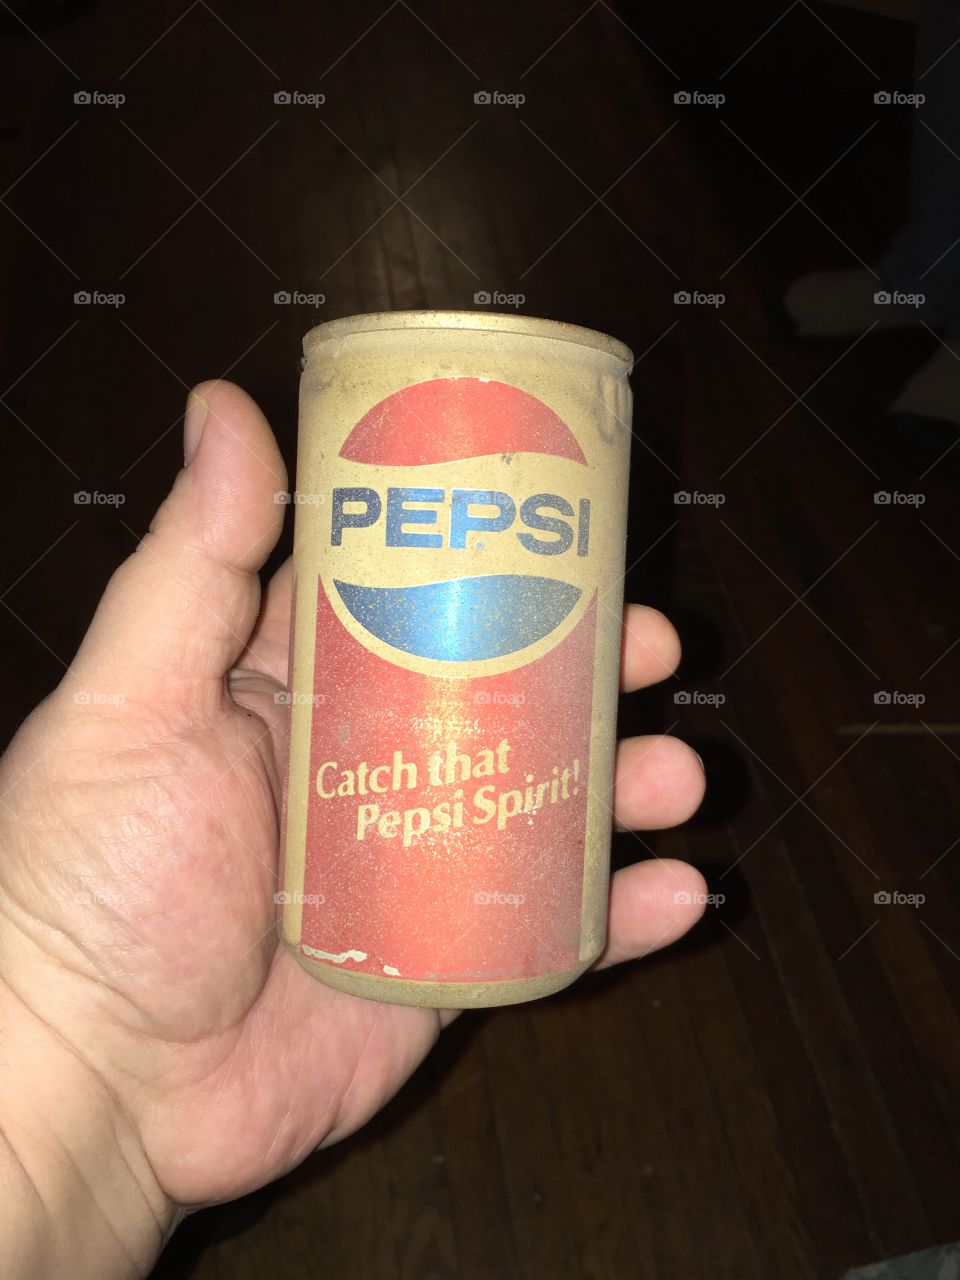 Caught that Pepsi Spirit